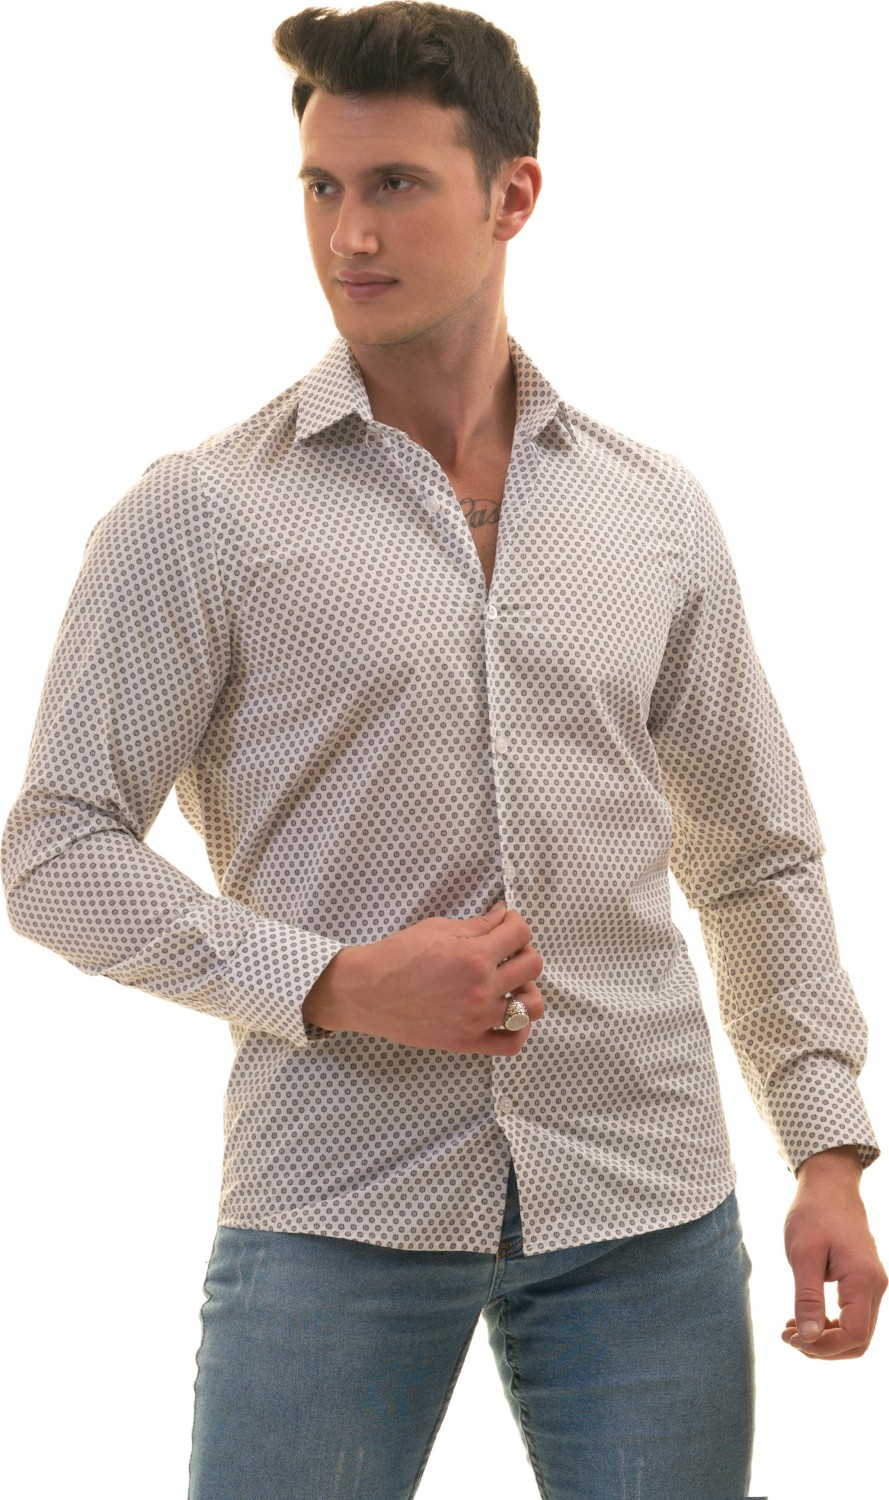 Эксклюзивная белая рубашка с цифровым принтом цветочного узора на темно-синем фоне, облегающего кроя.